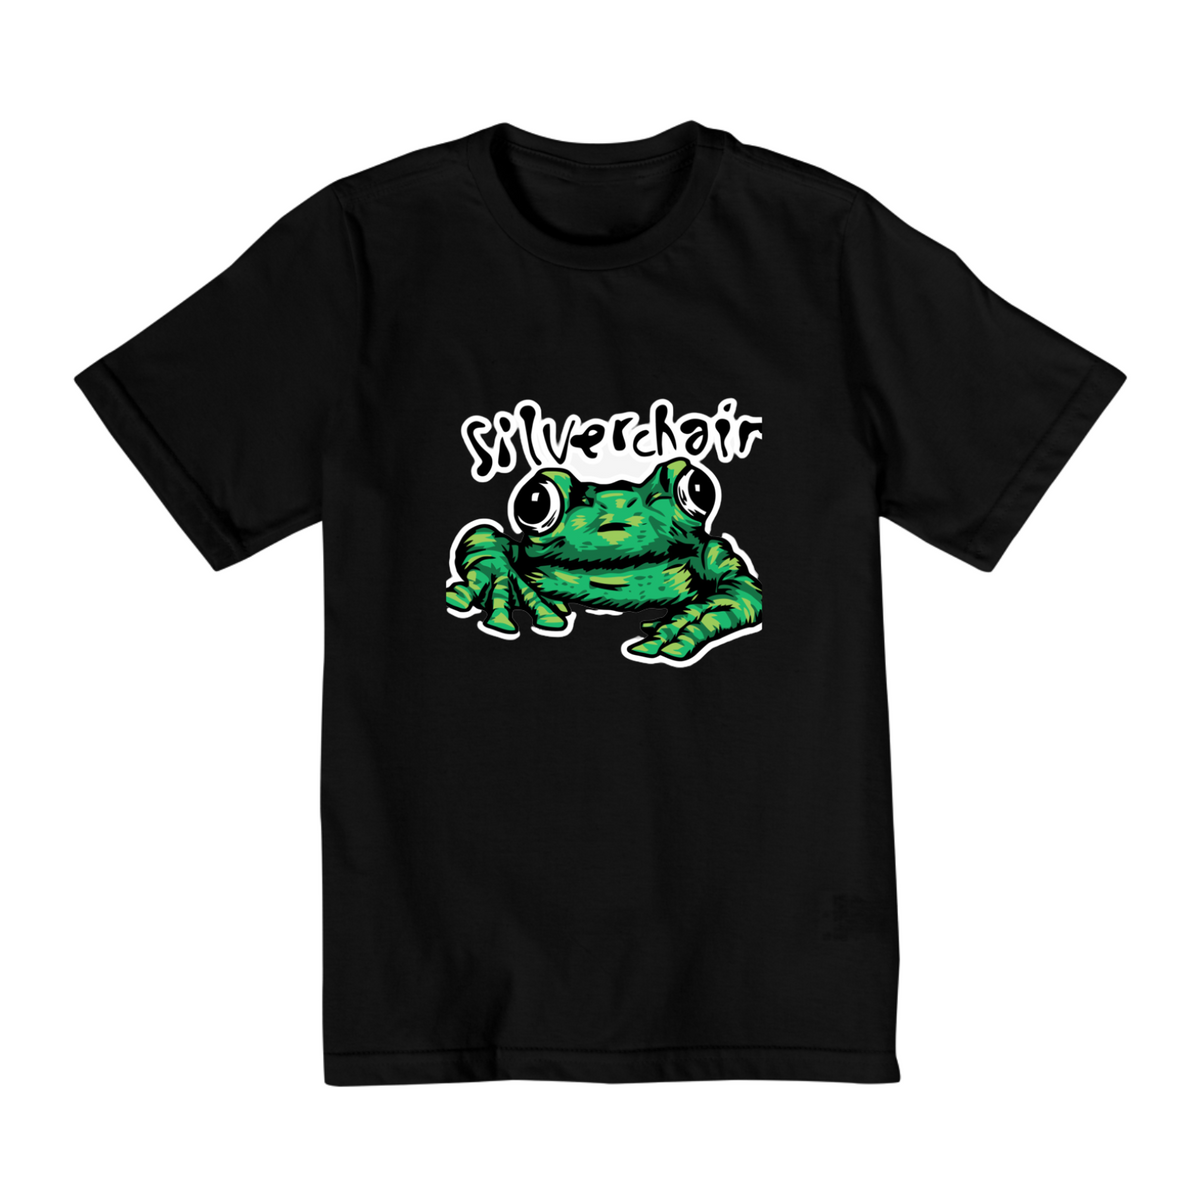 Nome do produto: Camiseta Infantil 02 a 08 anos - Bandas -  Silverchair